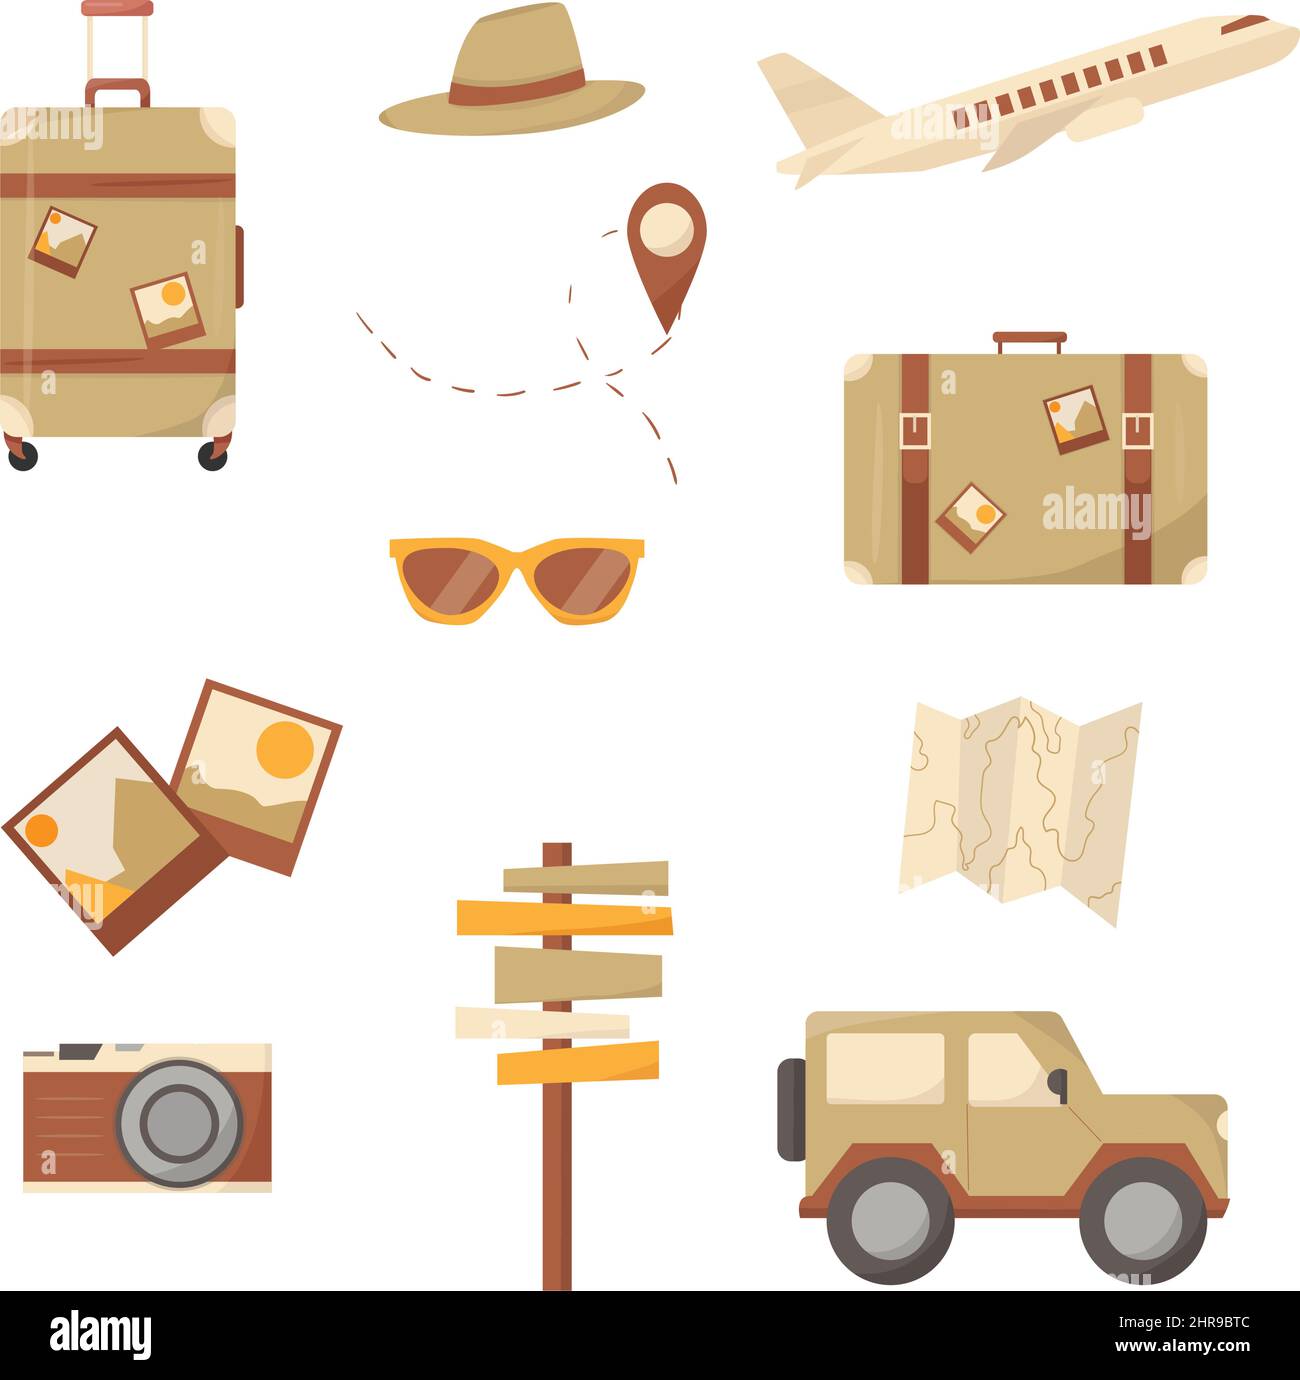 Iconos de Travel Africa Set. Tendencia de diseño plano. Bolsa, maleta, avión, mapa, jeep, puntero, dirección, gafas, cámara. Ilustración del Vector